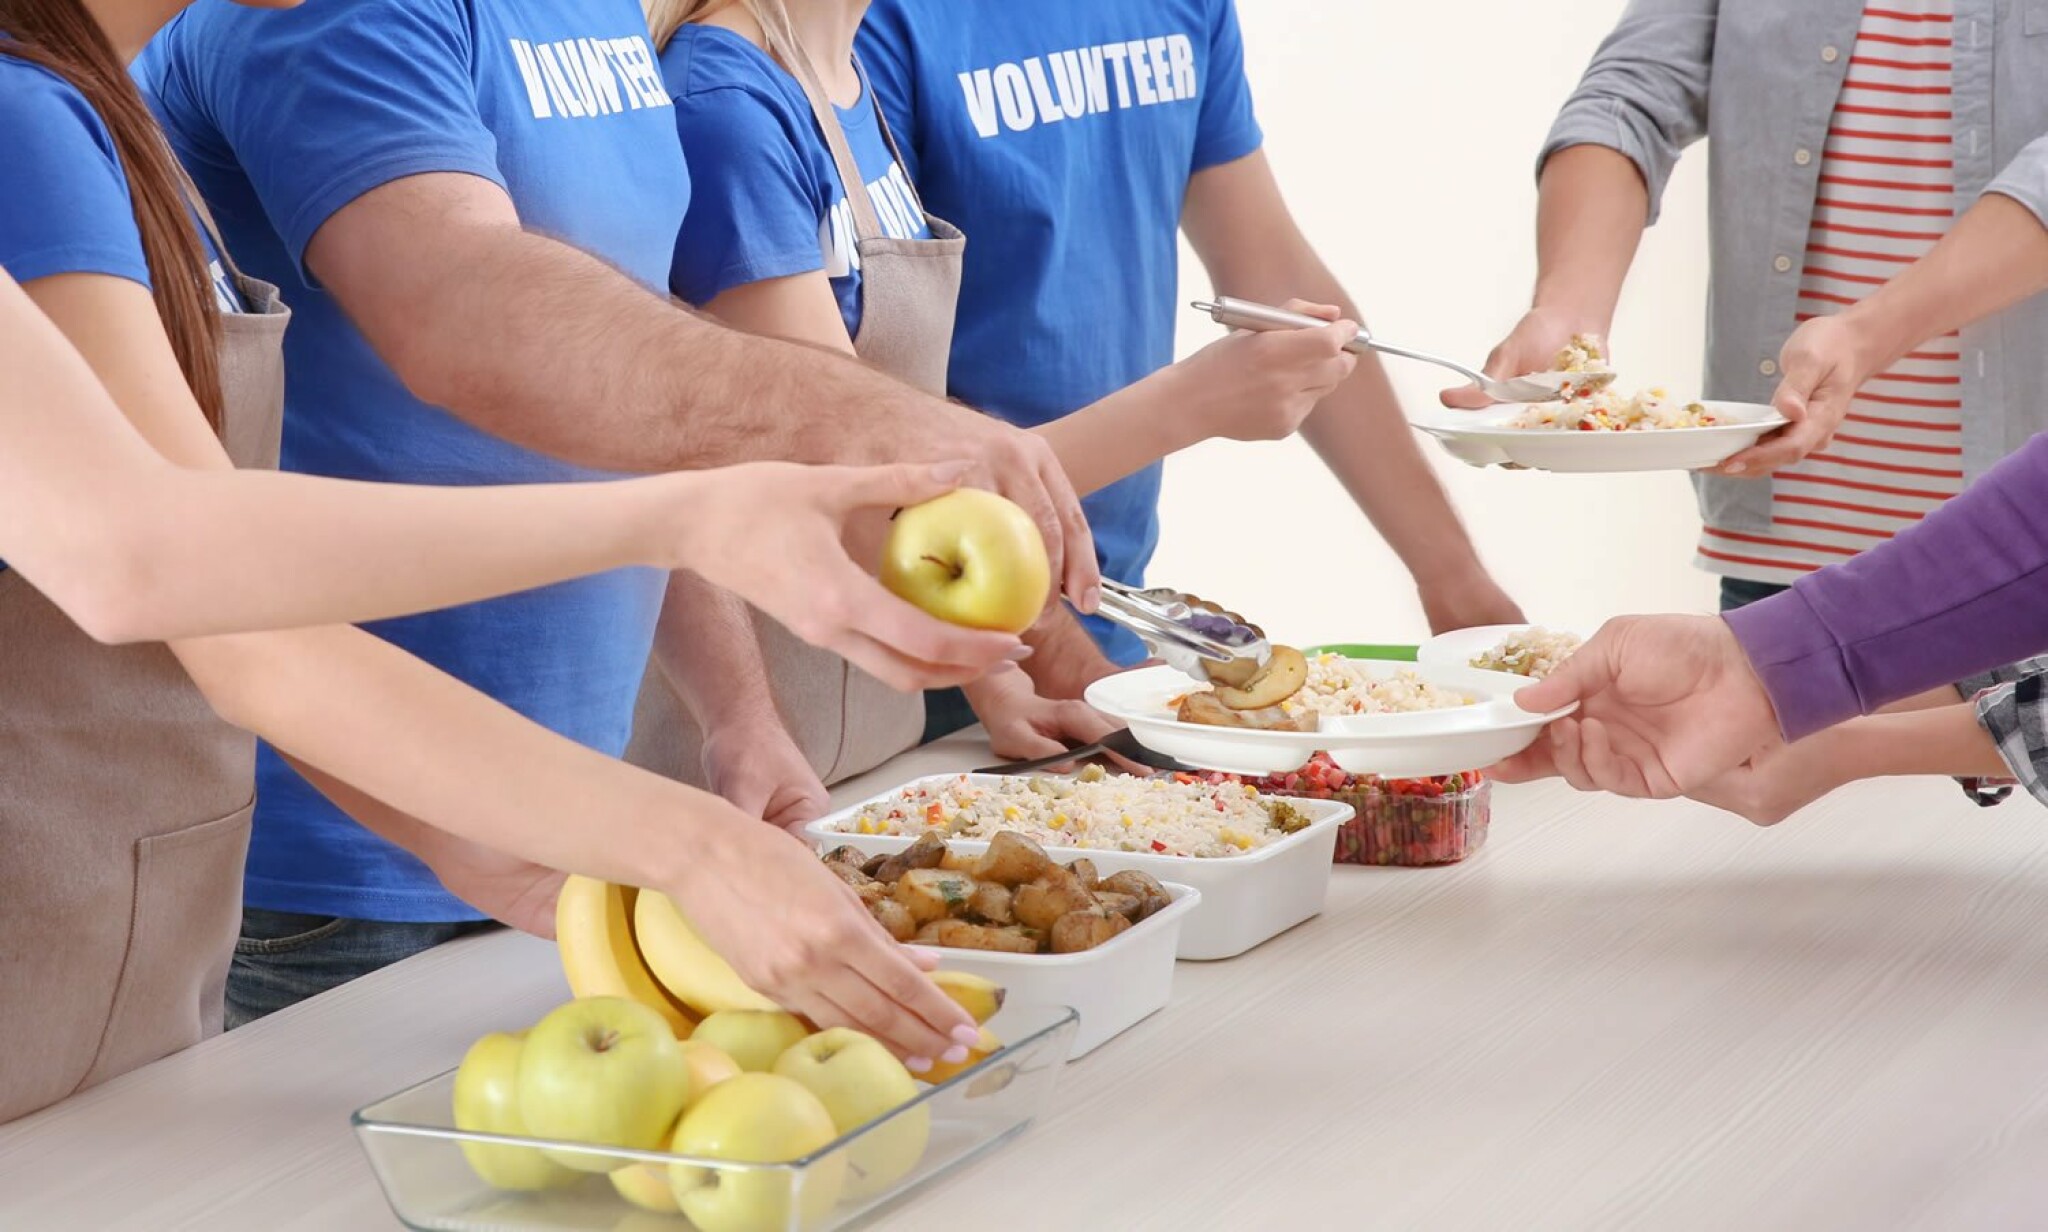 young-volunteers-serving-food-to-homeless-people.jpg